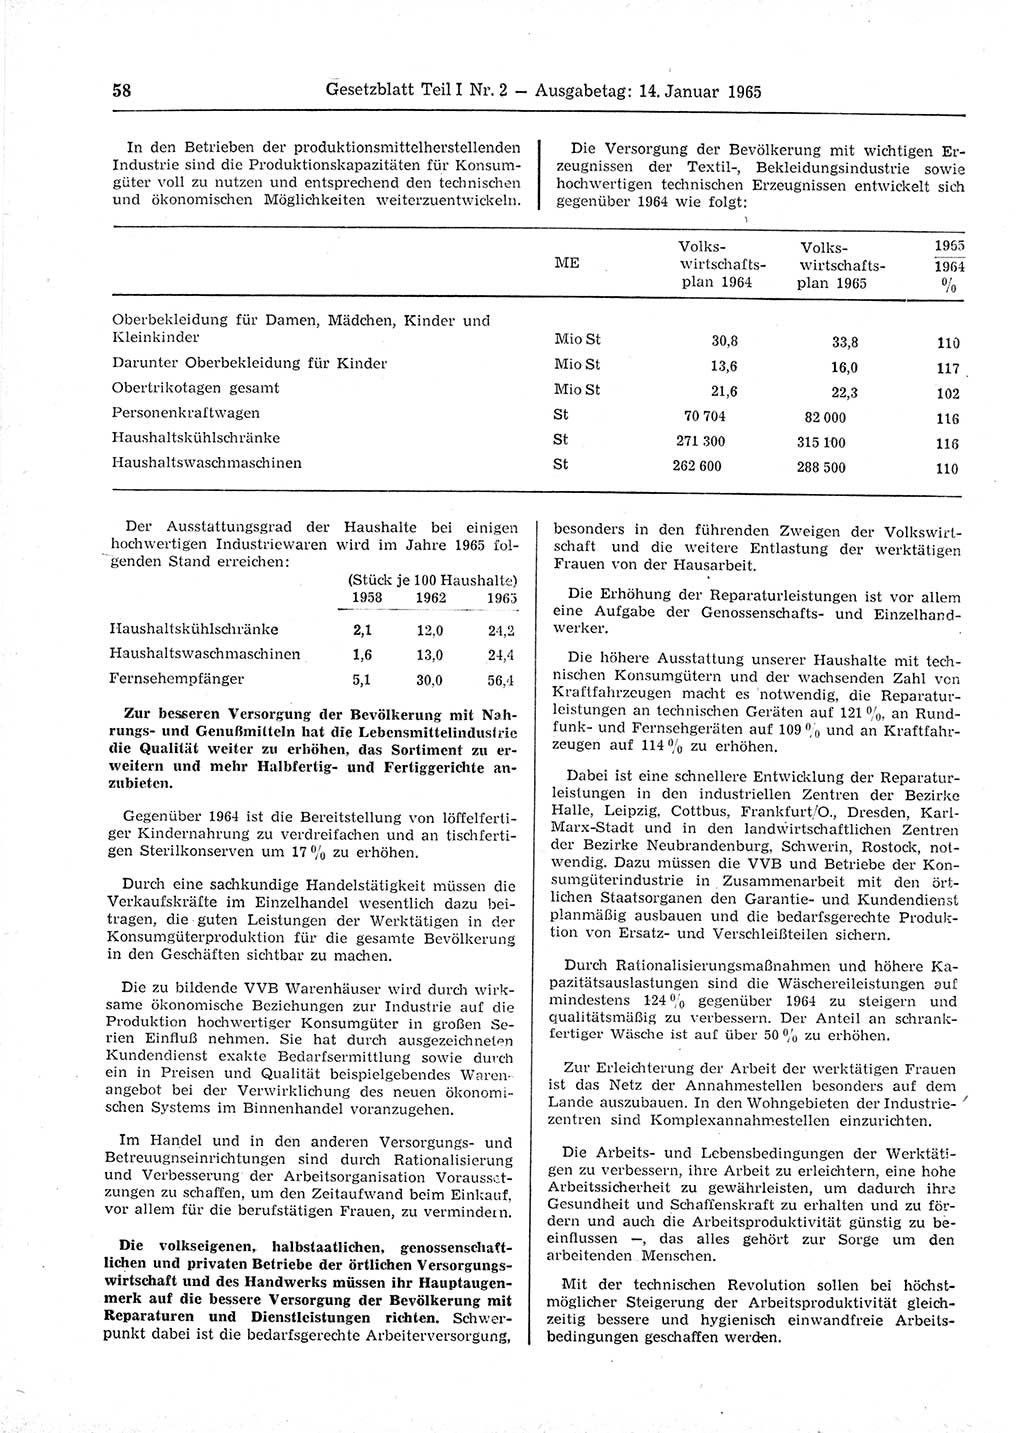 Gesetzblatt (GBl.) der Deutschen Demokratischen Republik (DDR) Teil Ⅰ 1965, Seite 58 (GBl. DDR Ⅰ 1965, S. 58)